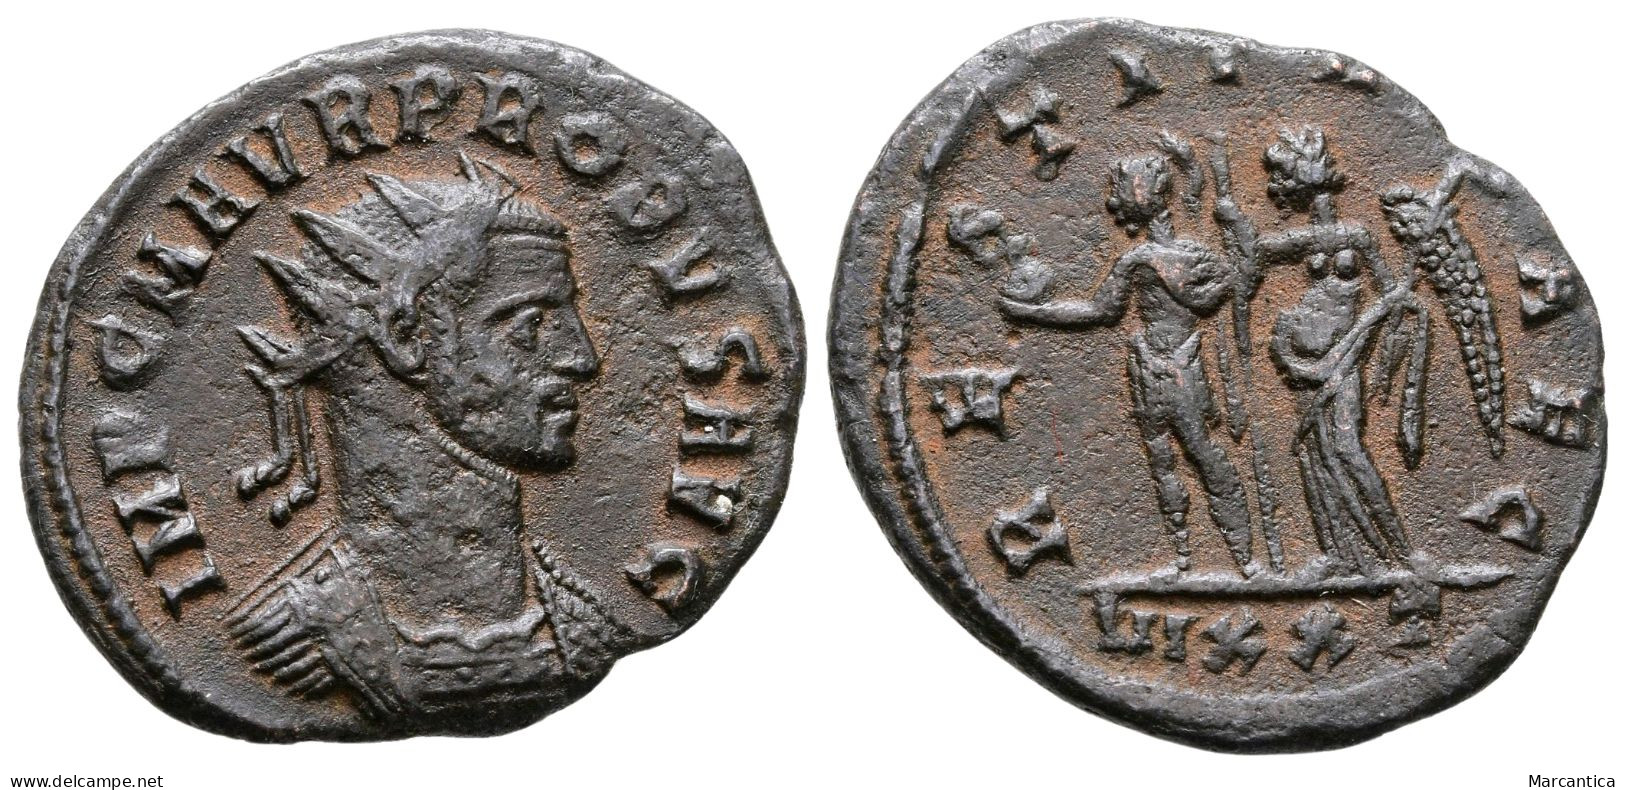 PROBUS (276-282). Antoninianus. Ticinum. - La Crisis Militar (235 / 284)